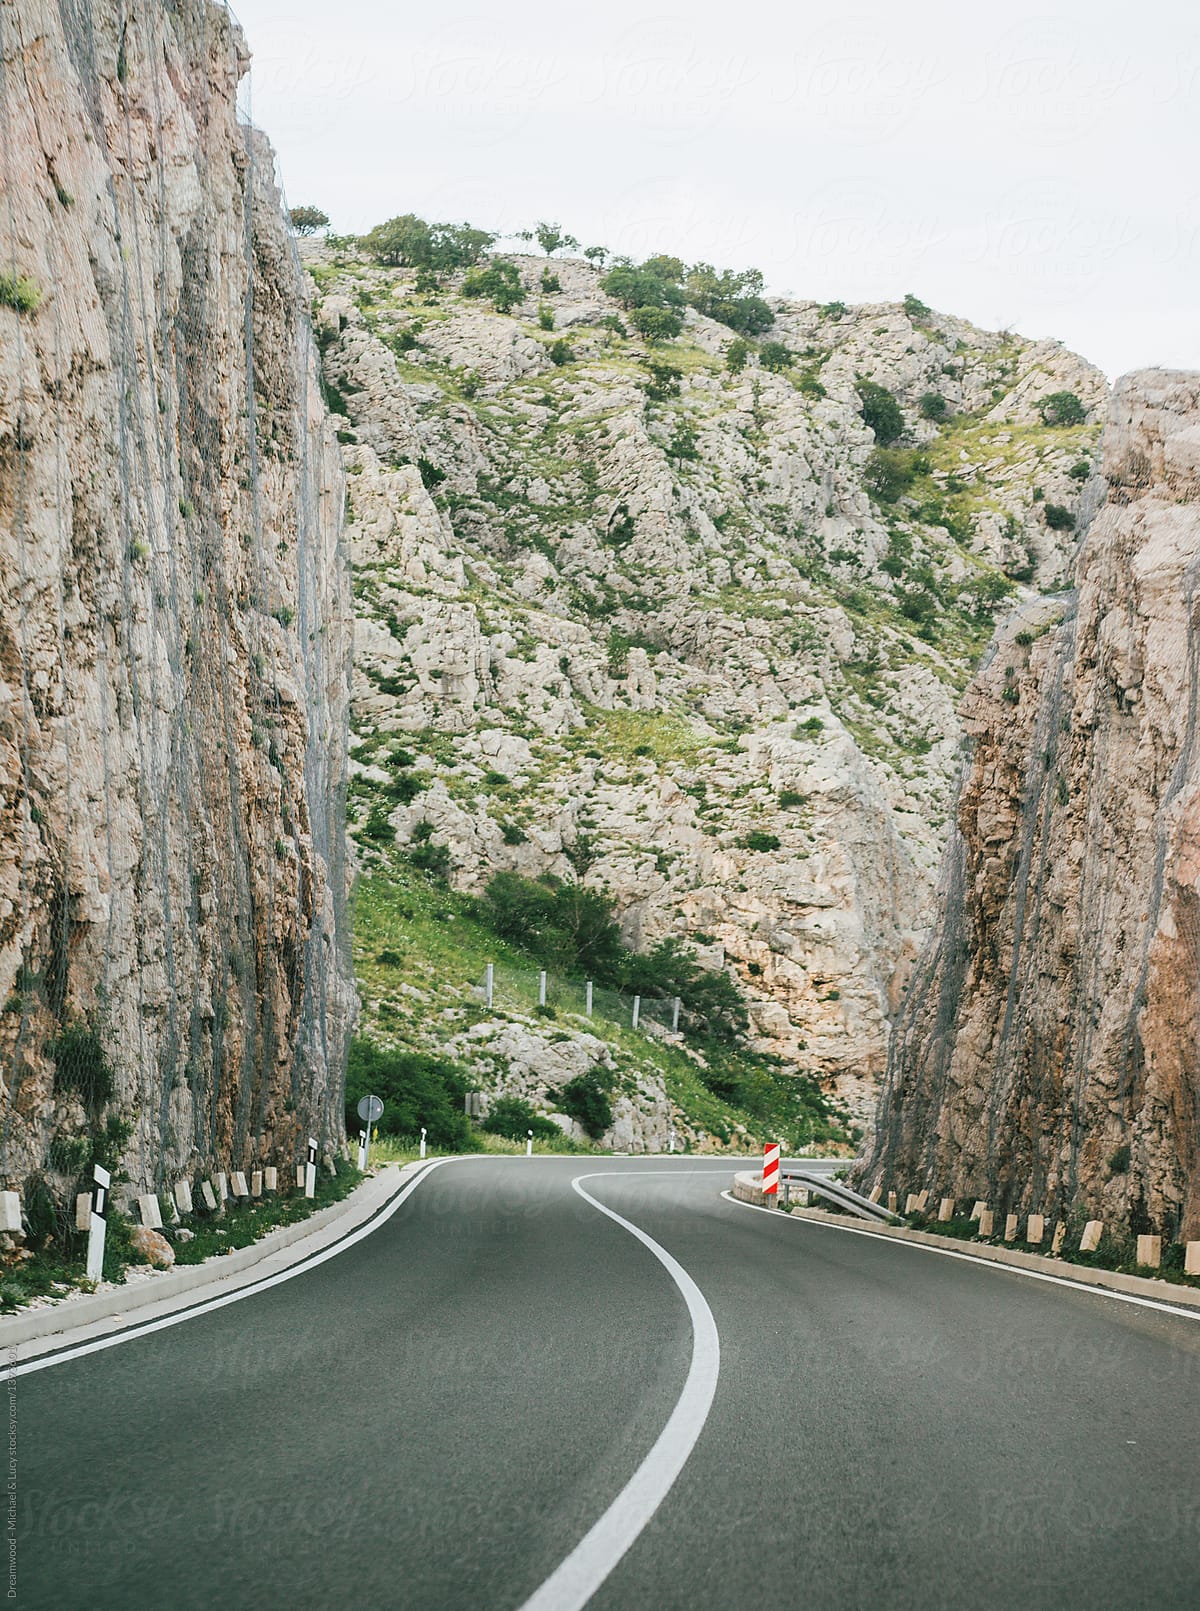 Road among high cliffs